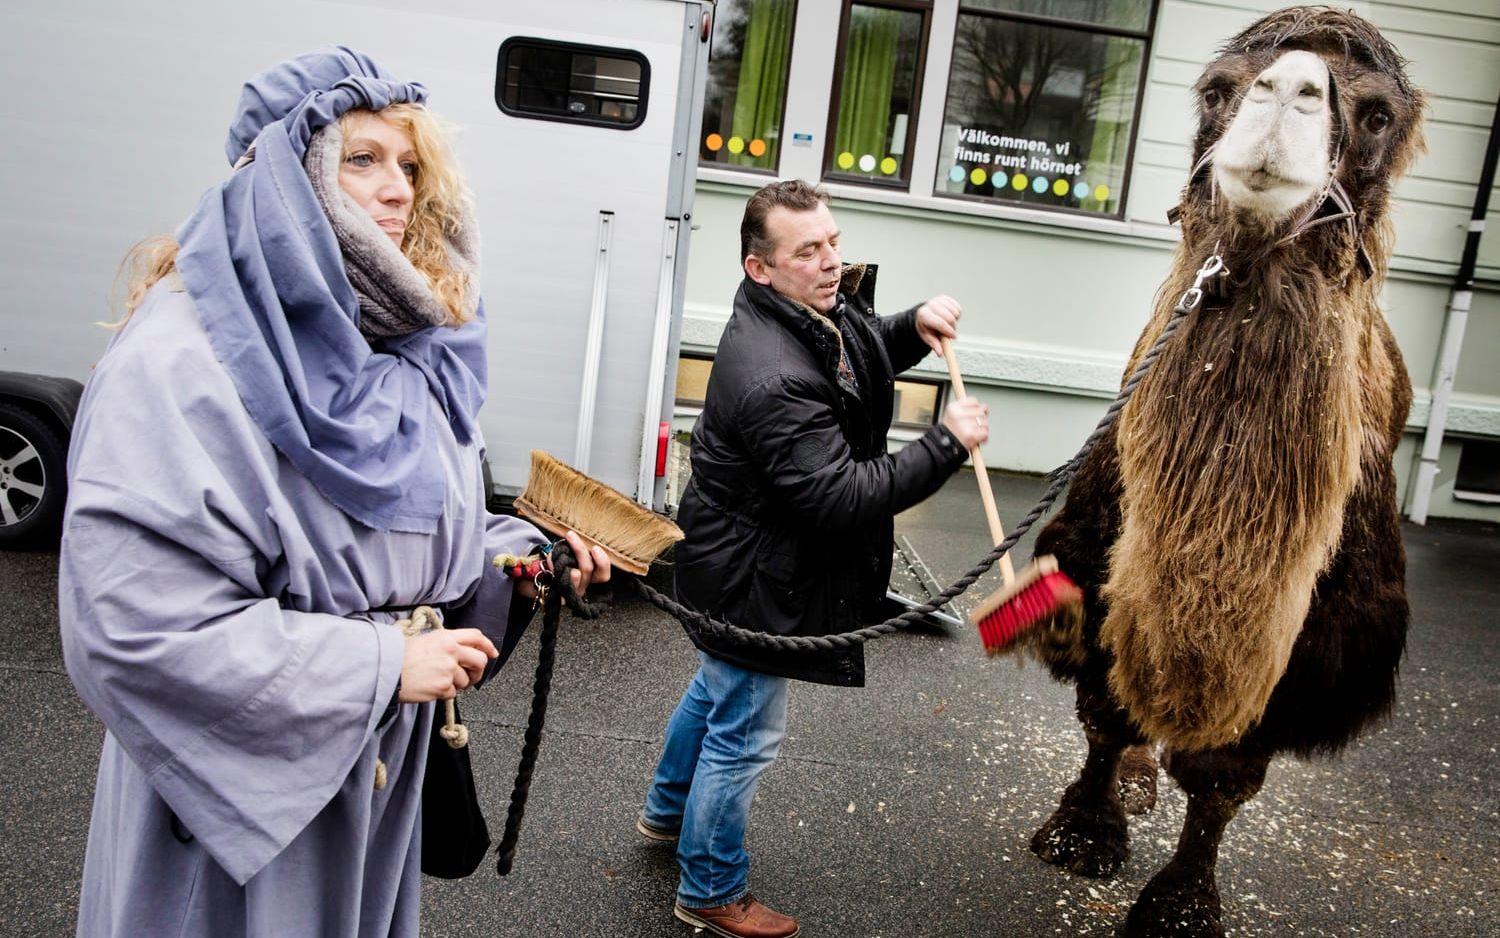 Putsad päls. Ägarparet Anton Frank och Silke Dornseiff snyggar till kamelen Pascha före framträdandet i Levande julkrubba.